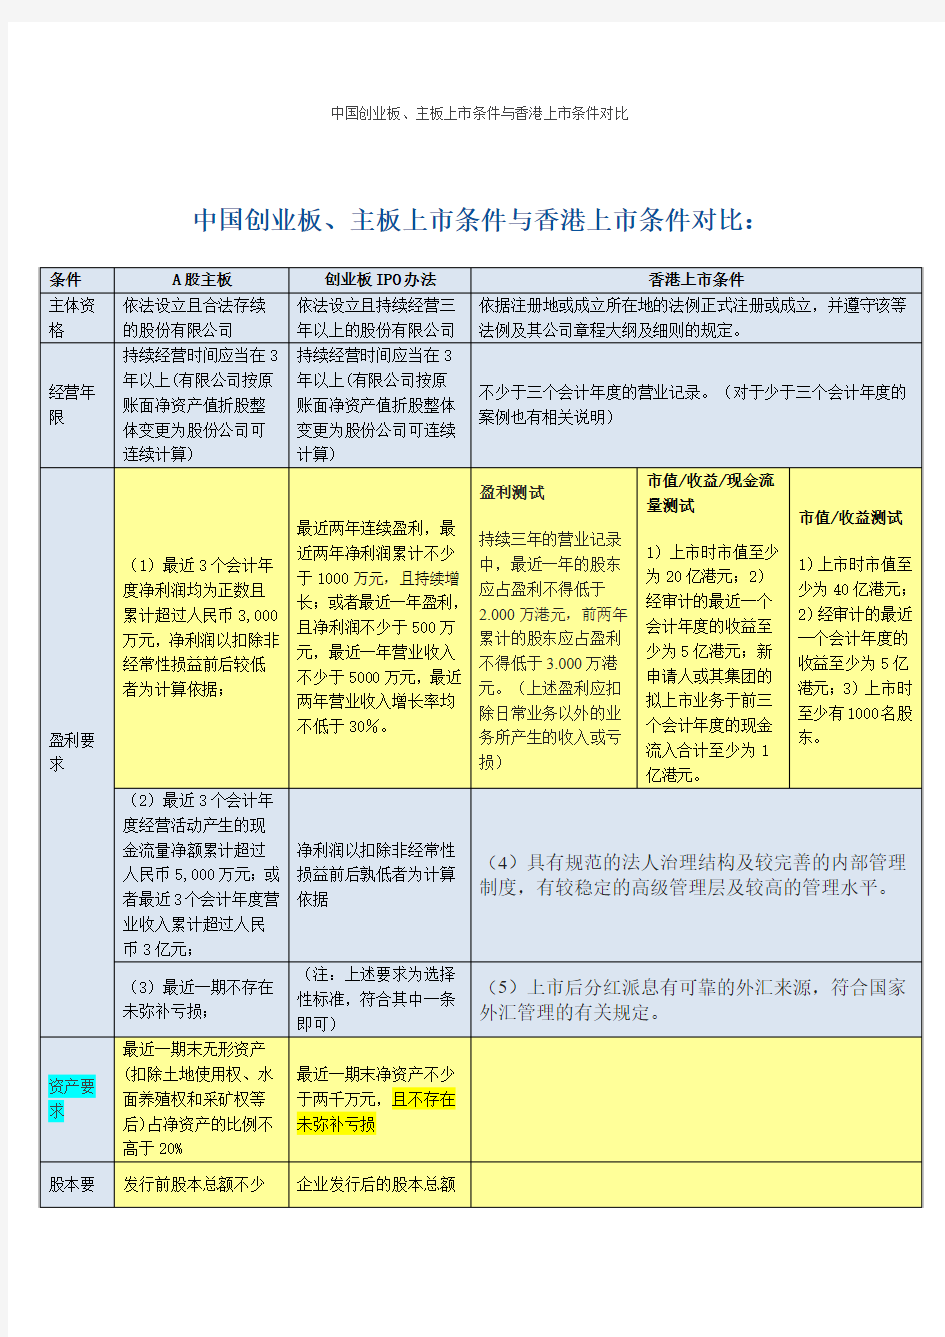 中国创业板、主板上市条件与香港上市条件对比